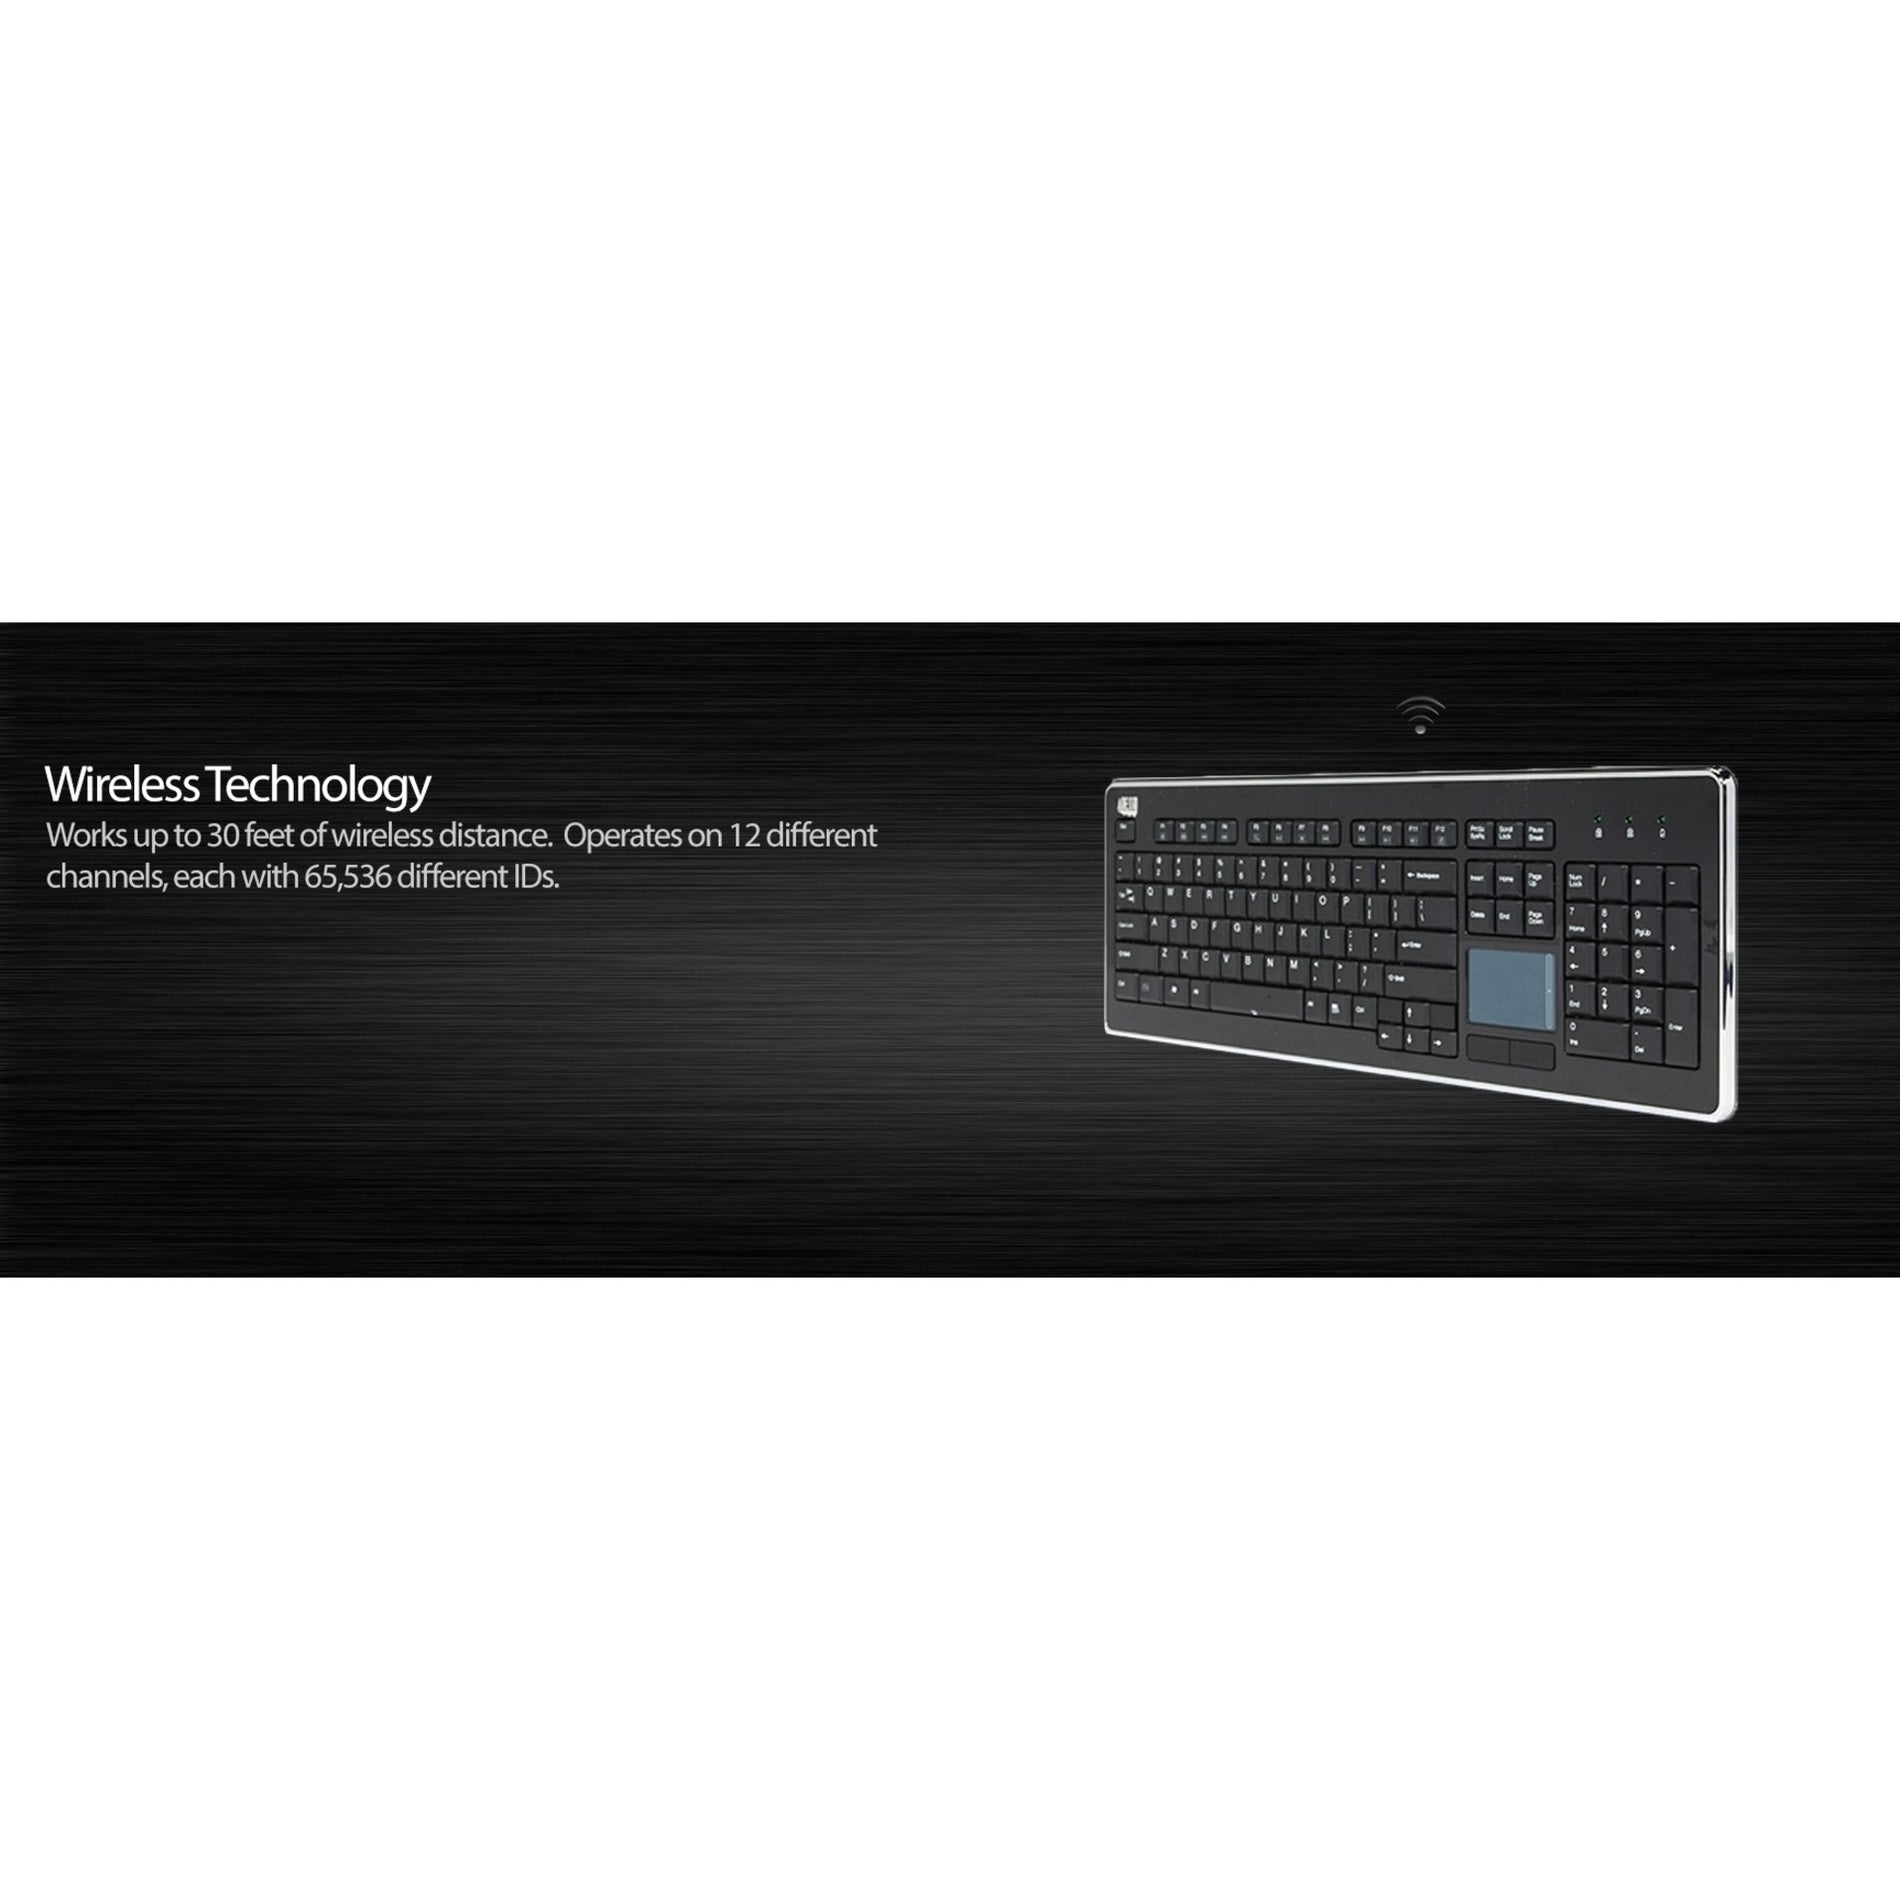 Adesso WKB-4400UB Wireless Desktop Touchpad Keyboard, Slim and Quiet Keys, 2.4 GHz RF Wireless Technology